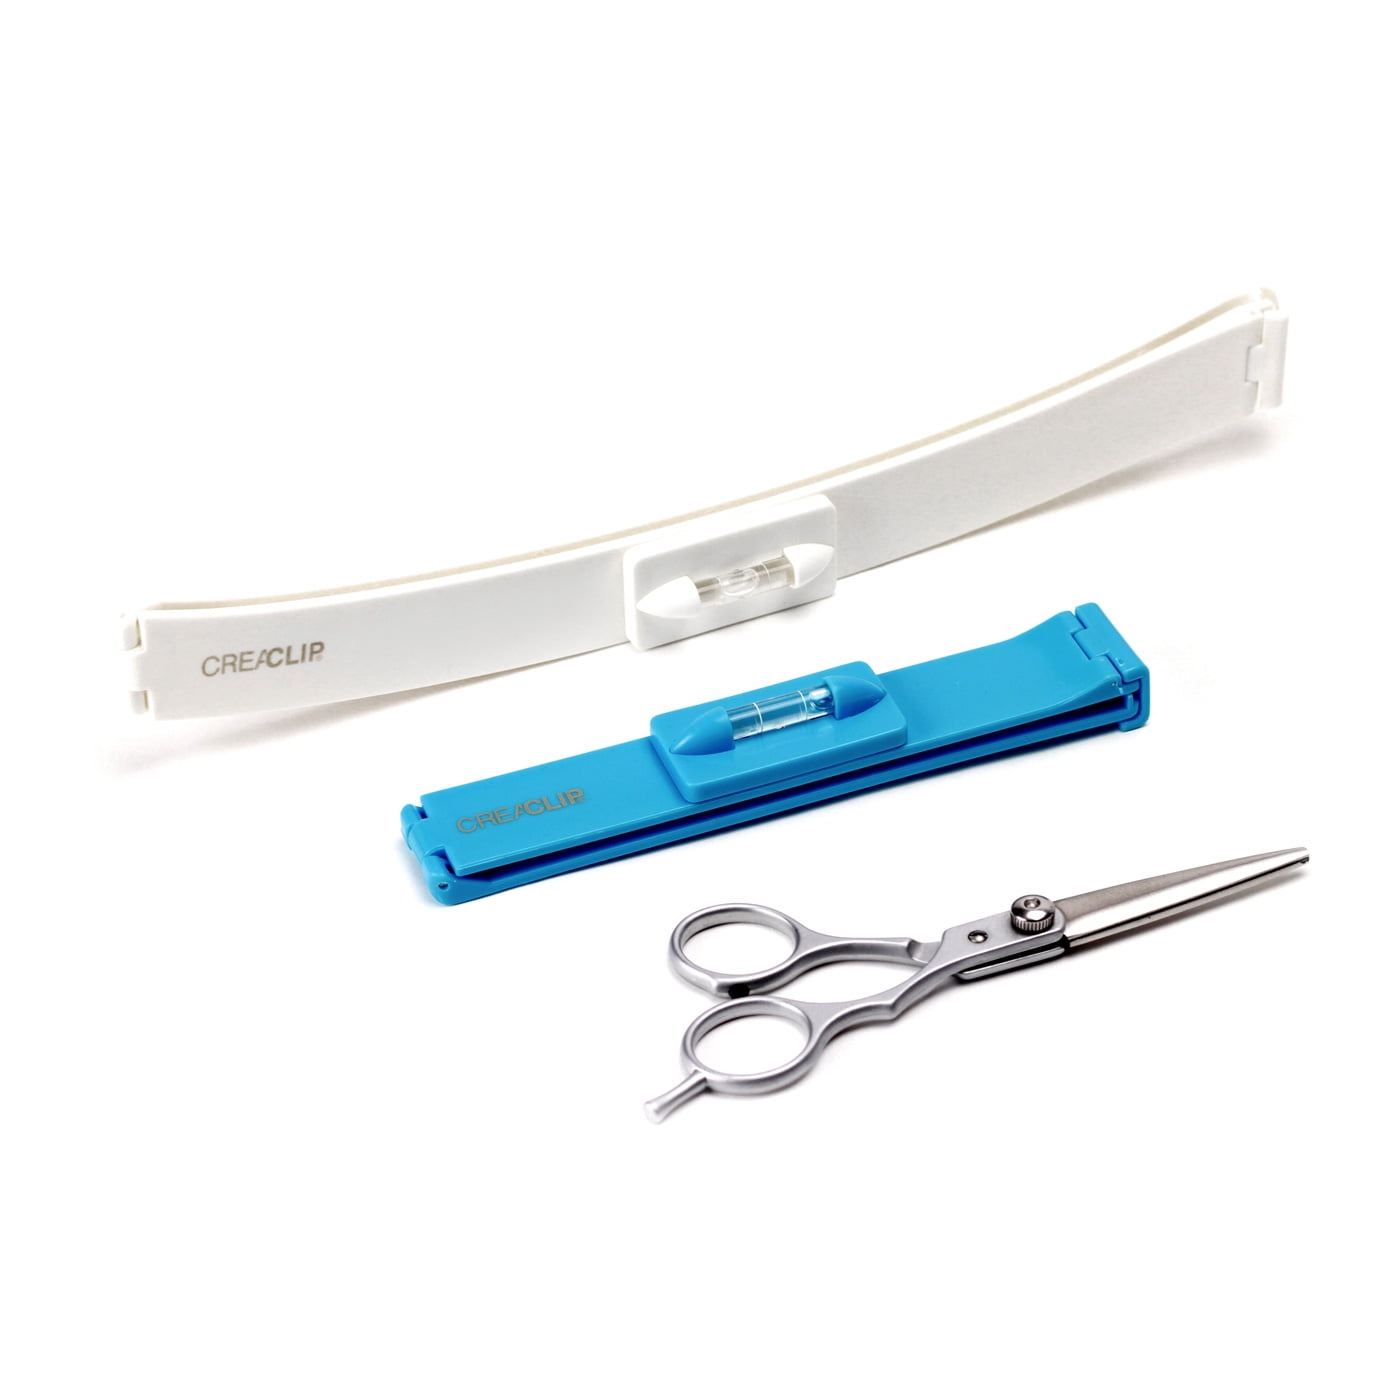 Buy CreaClip Premium Professional Hair Cutting Scissors at $19.99